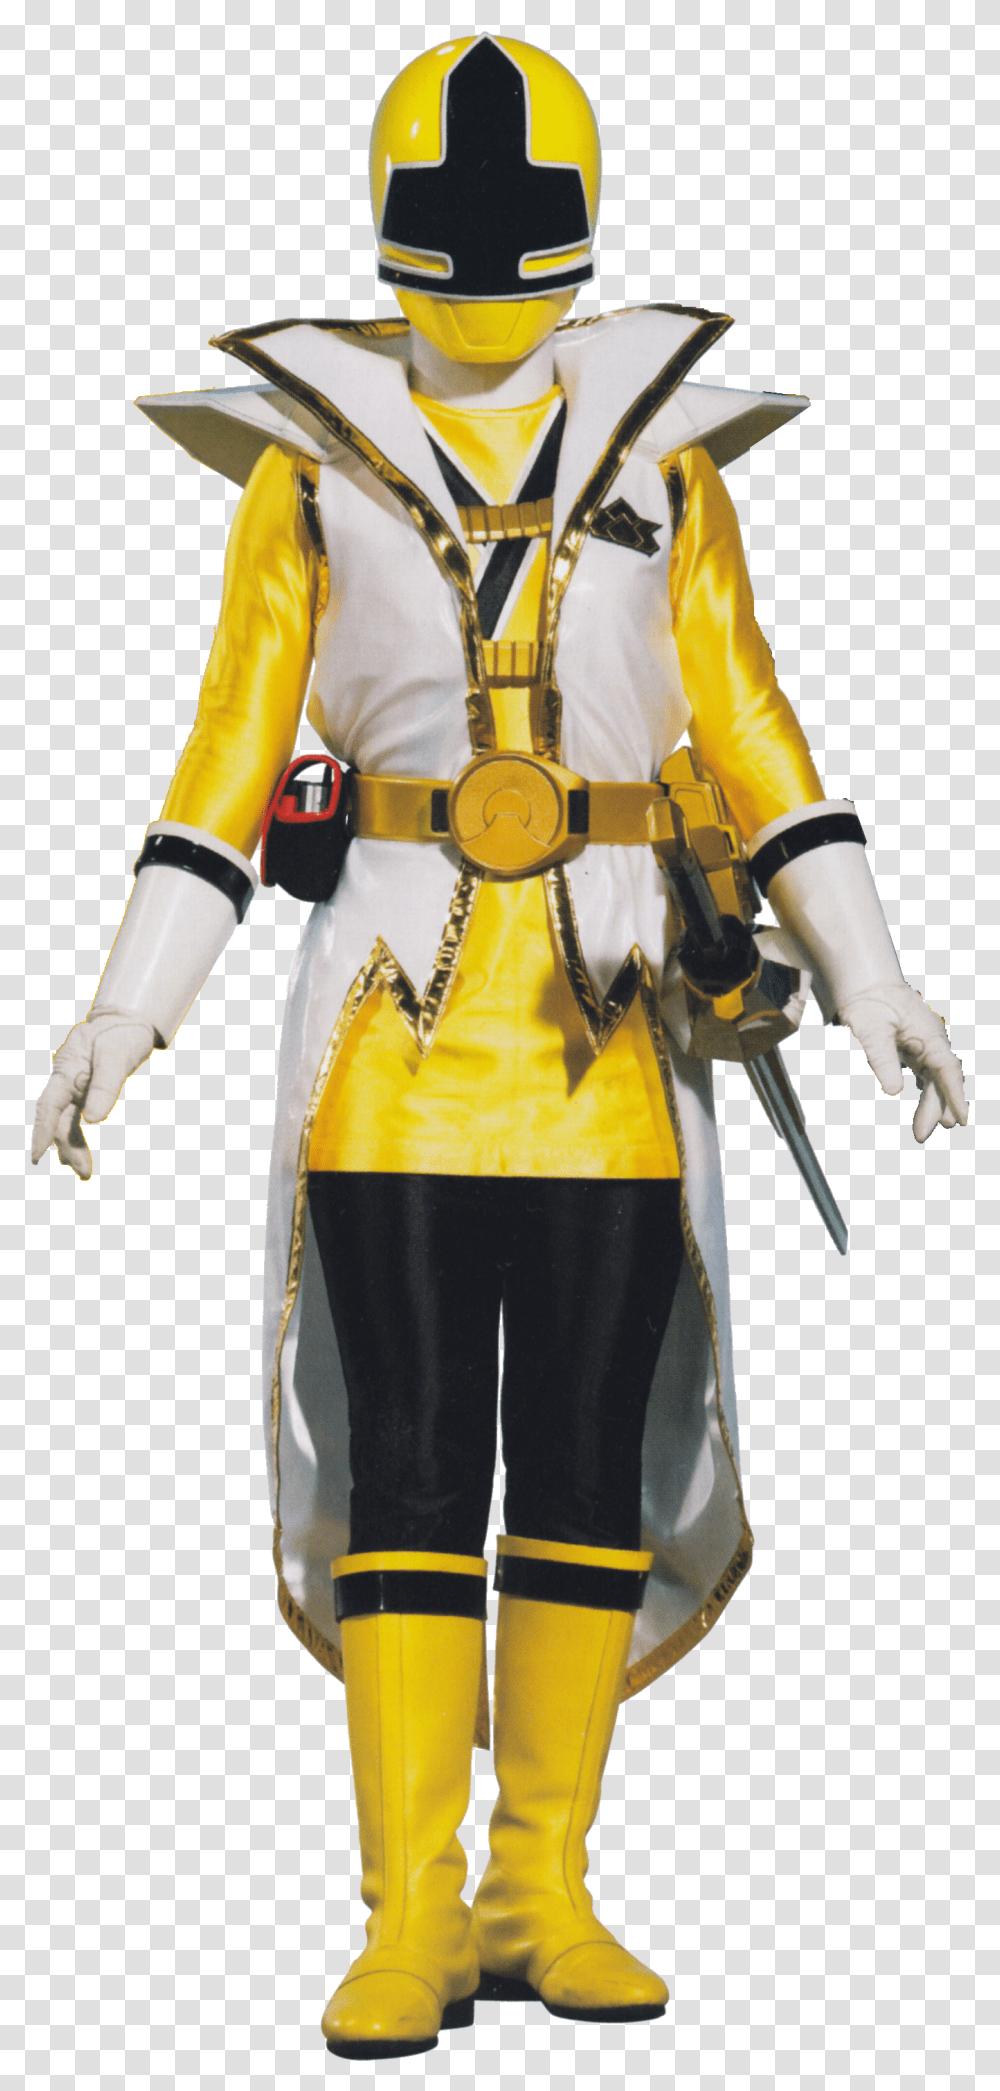 Power Rangers Super Samurai Yellow Ranger, Person, Human, Helmet Transparent Png